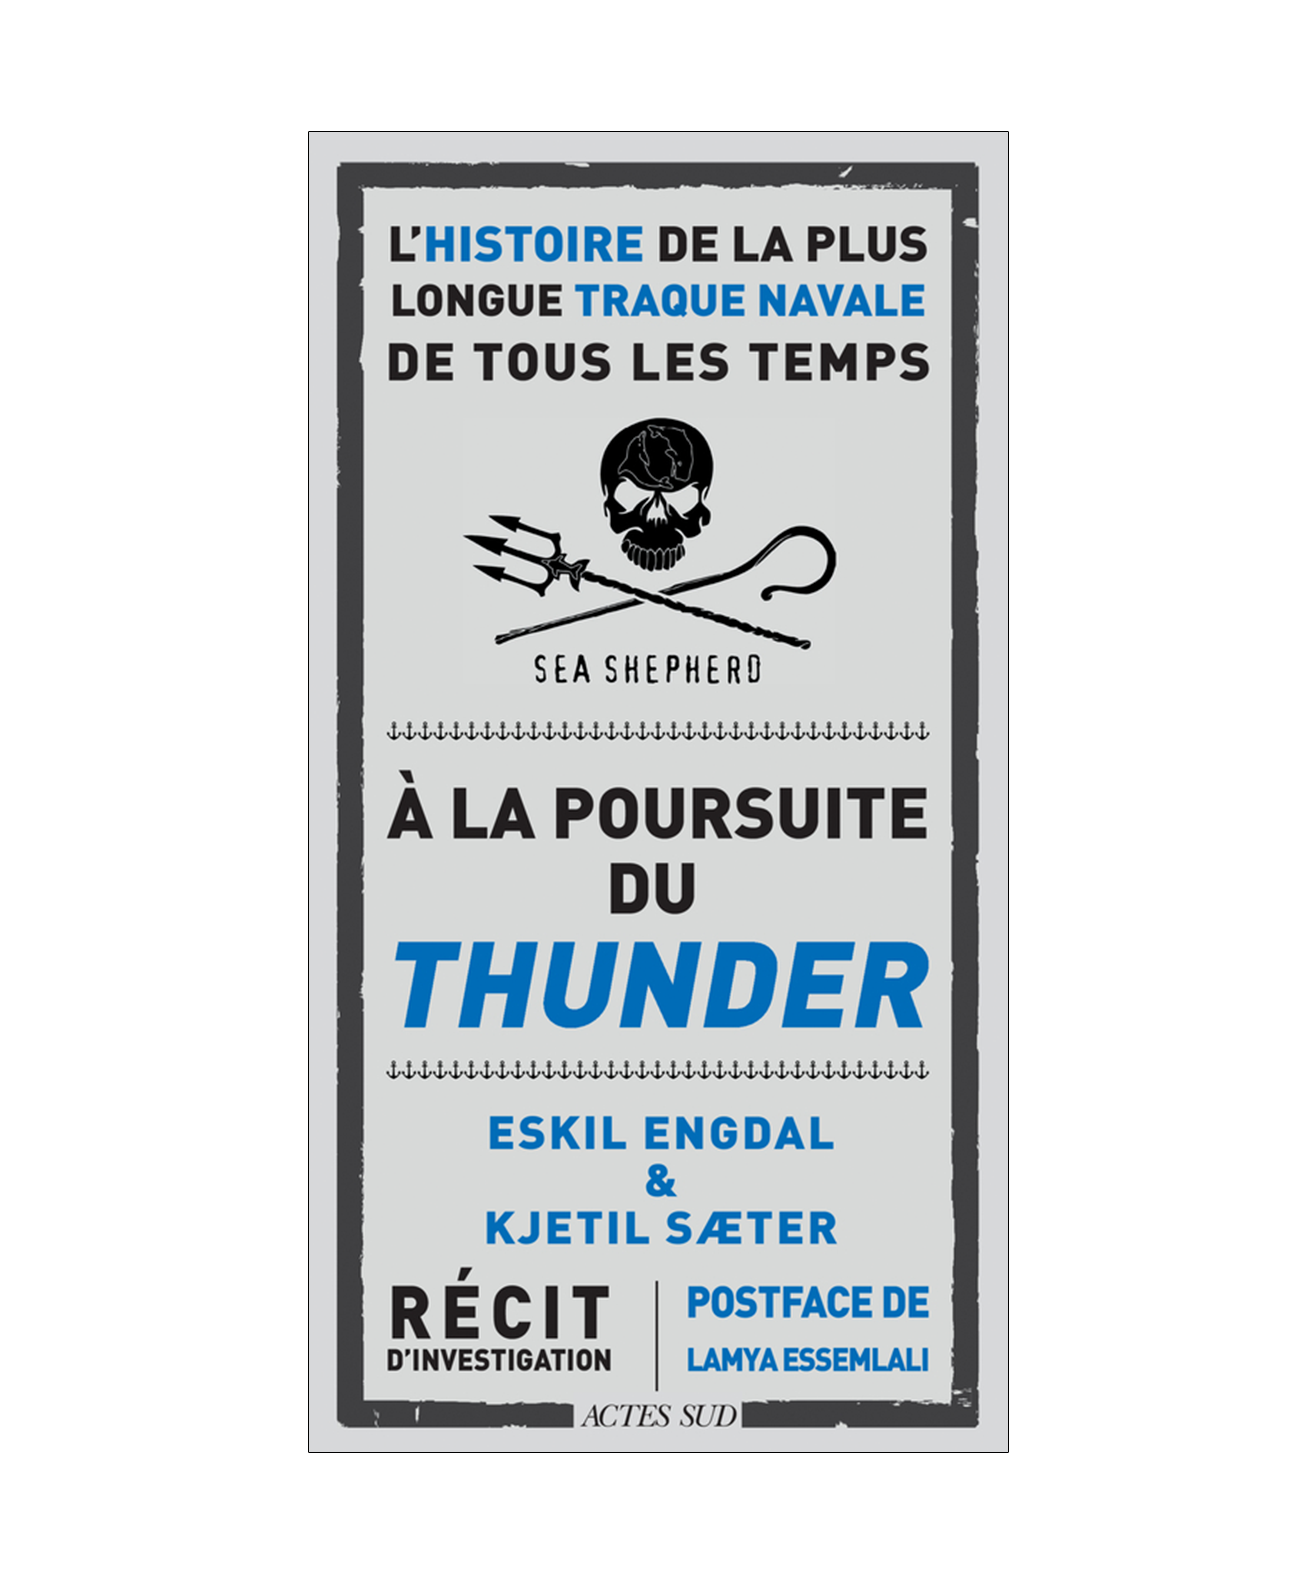 A La Poursuite du Thunder